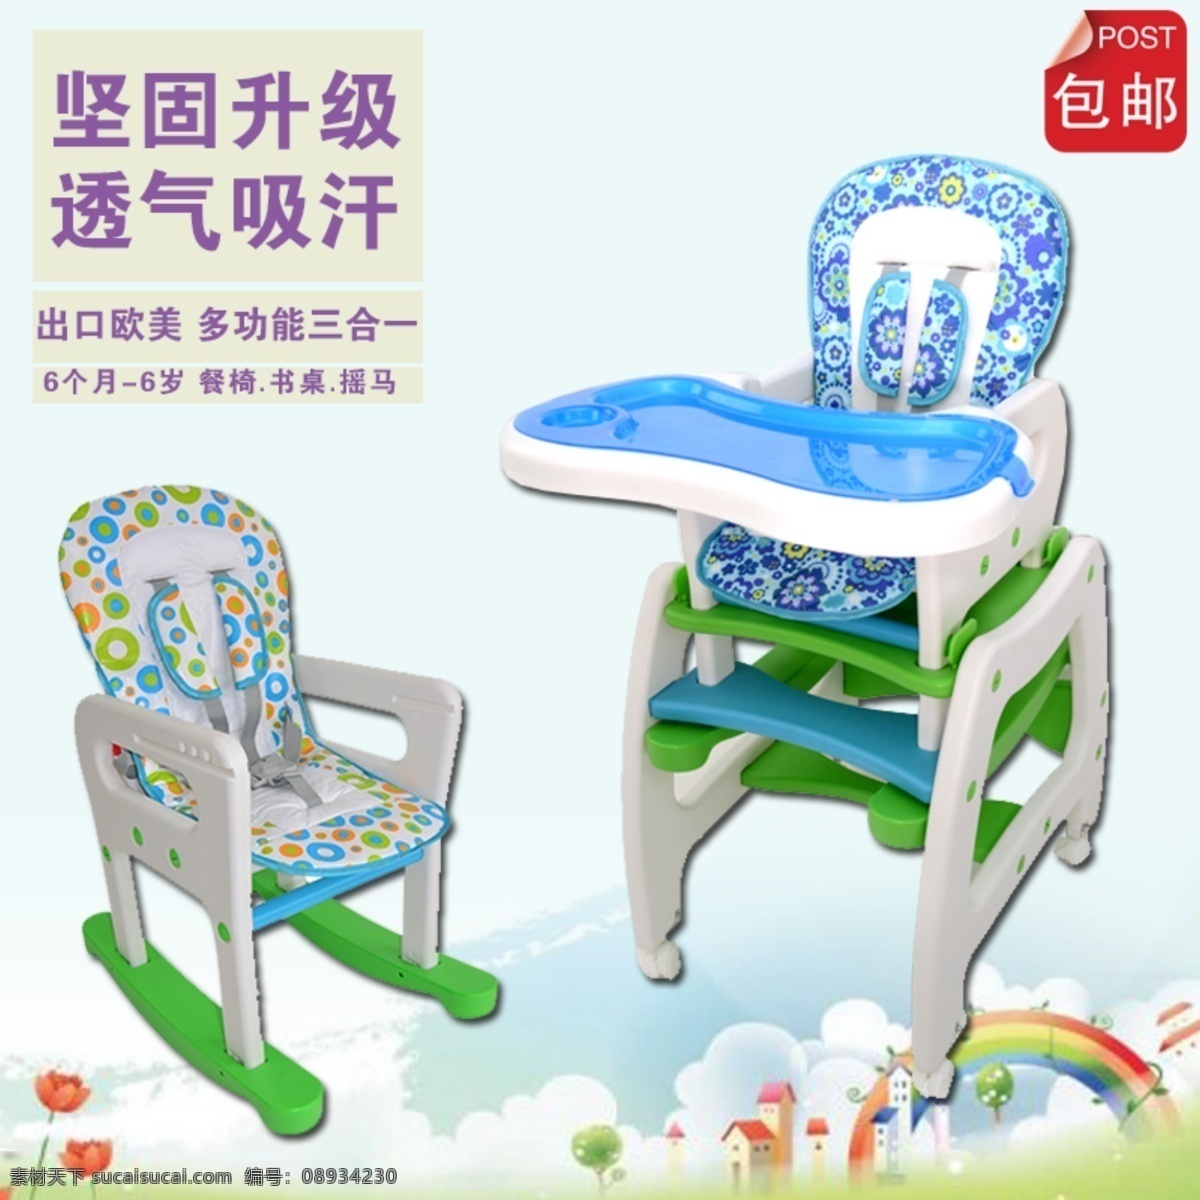 儿童 主 图 辣妈餐椅儿童 儿童座椅 多个能学习椅 育儿神器 psd格式 原创素材 白色